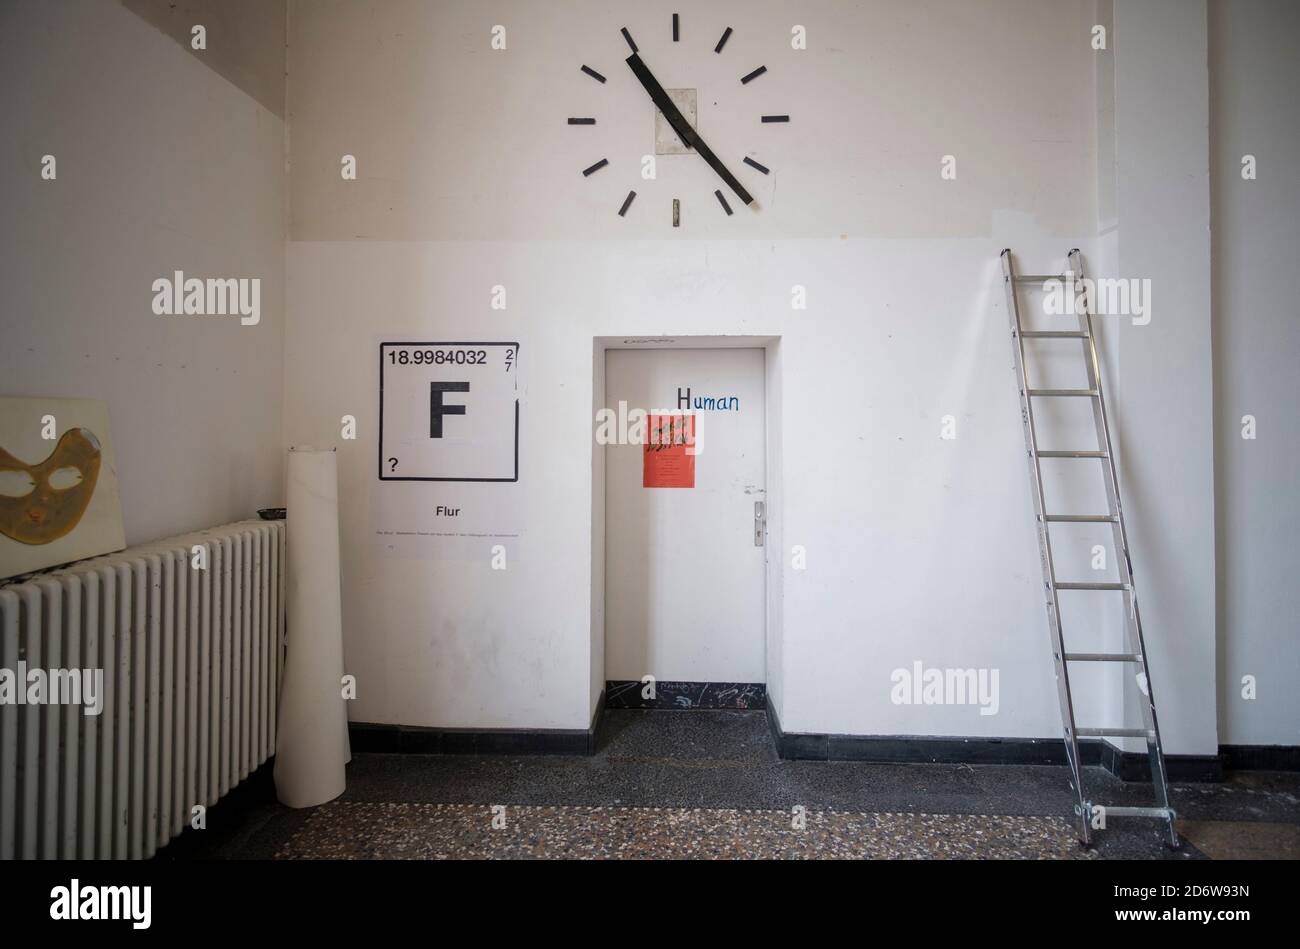 Tür mit der Aufschrift „Human“, große Wanduhr, angelehnte Leiter, schwarzes F in  der Kunstakademie Düsseldorf Stock Photo